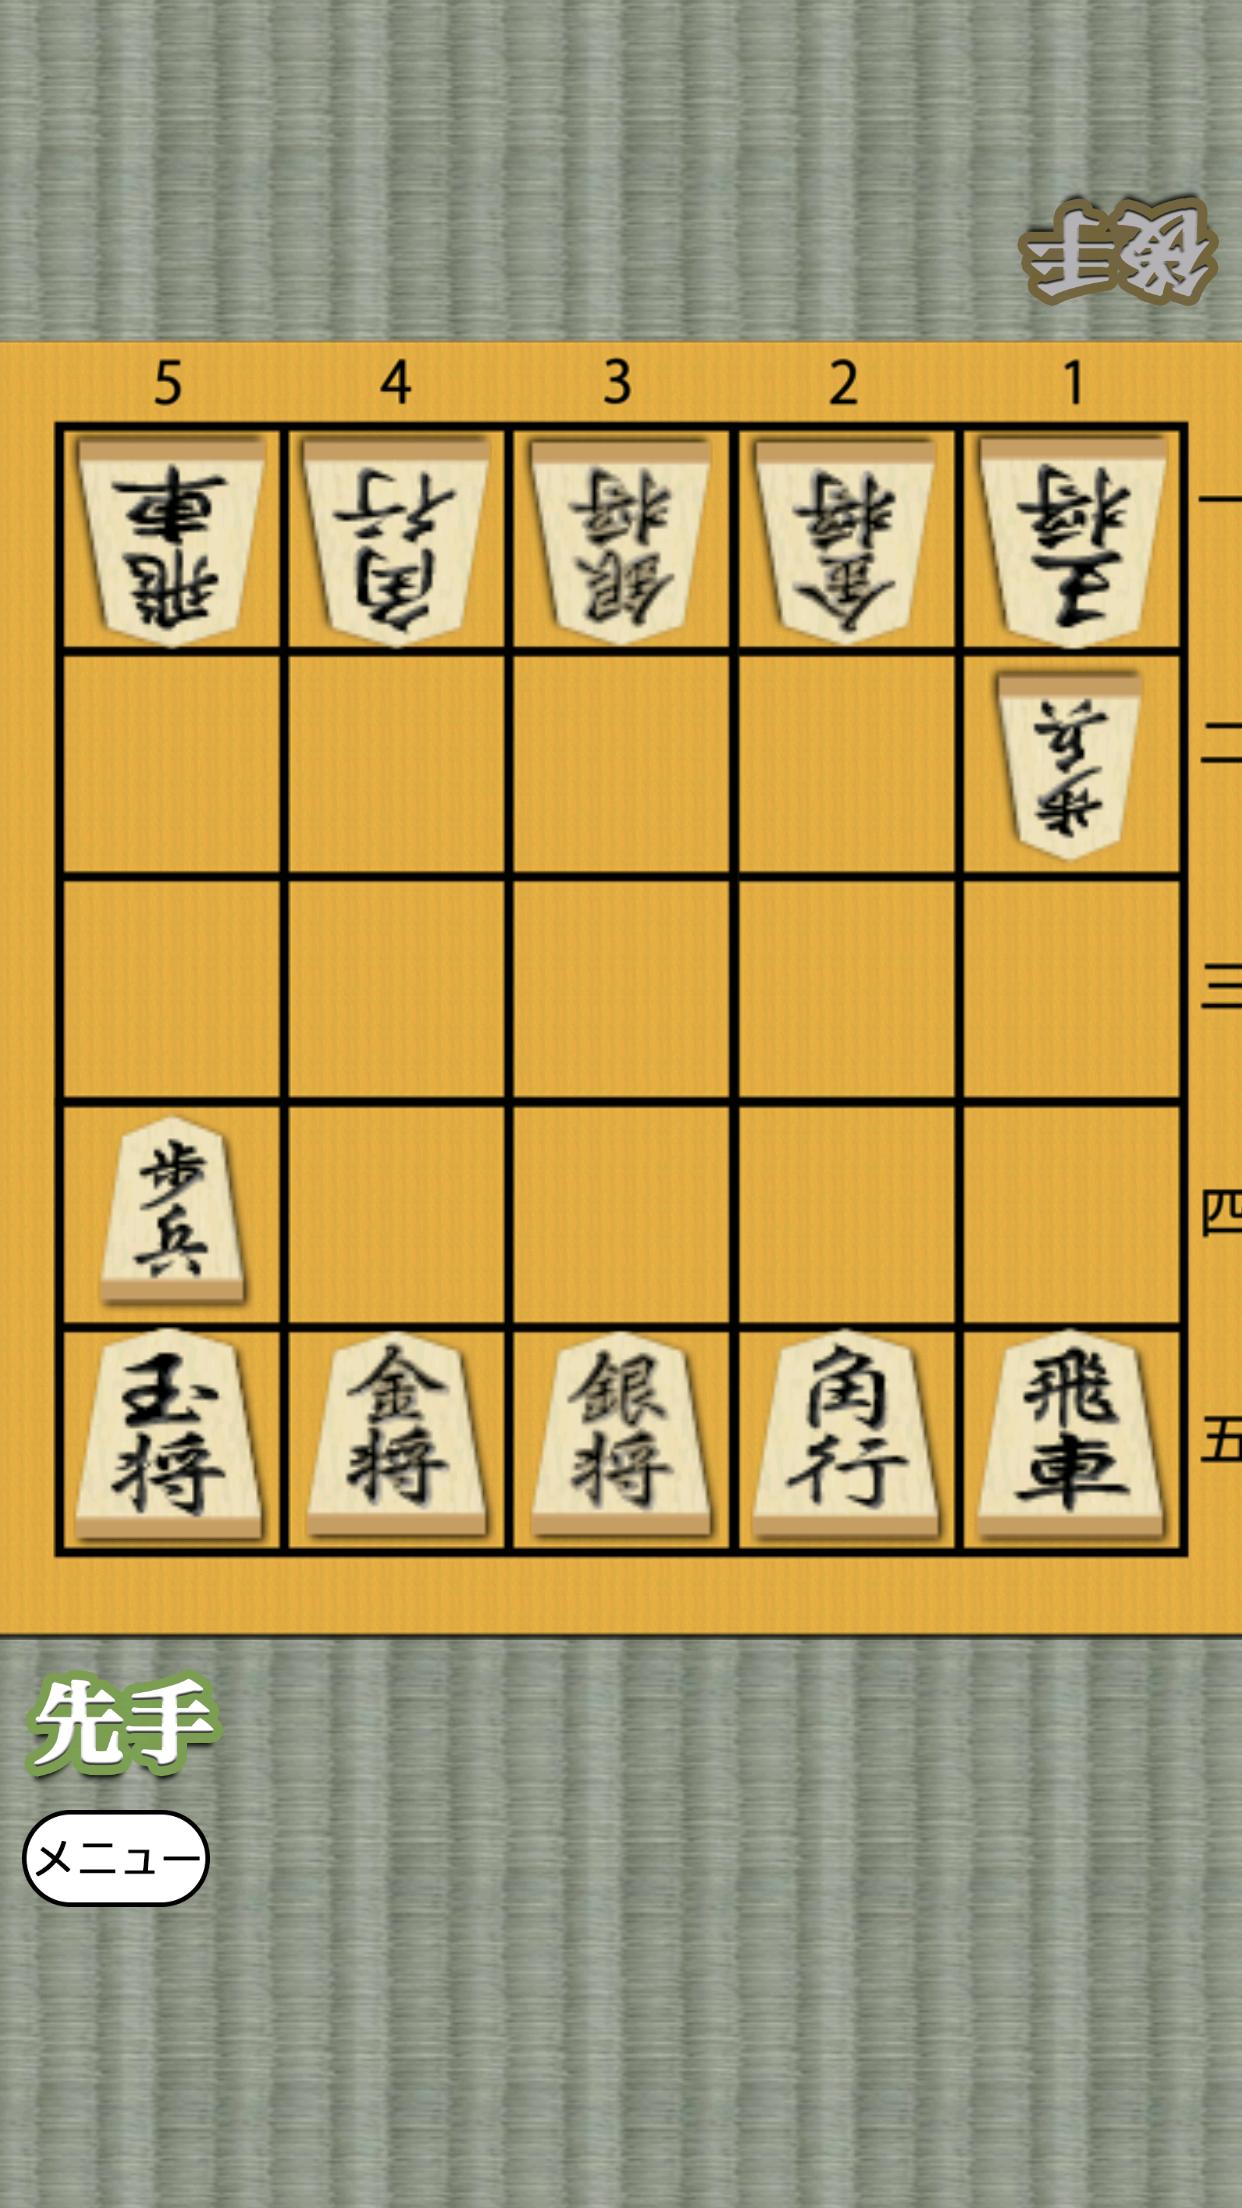 Shogi for beginners 1.0.4 Screenshot 12